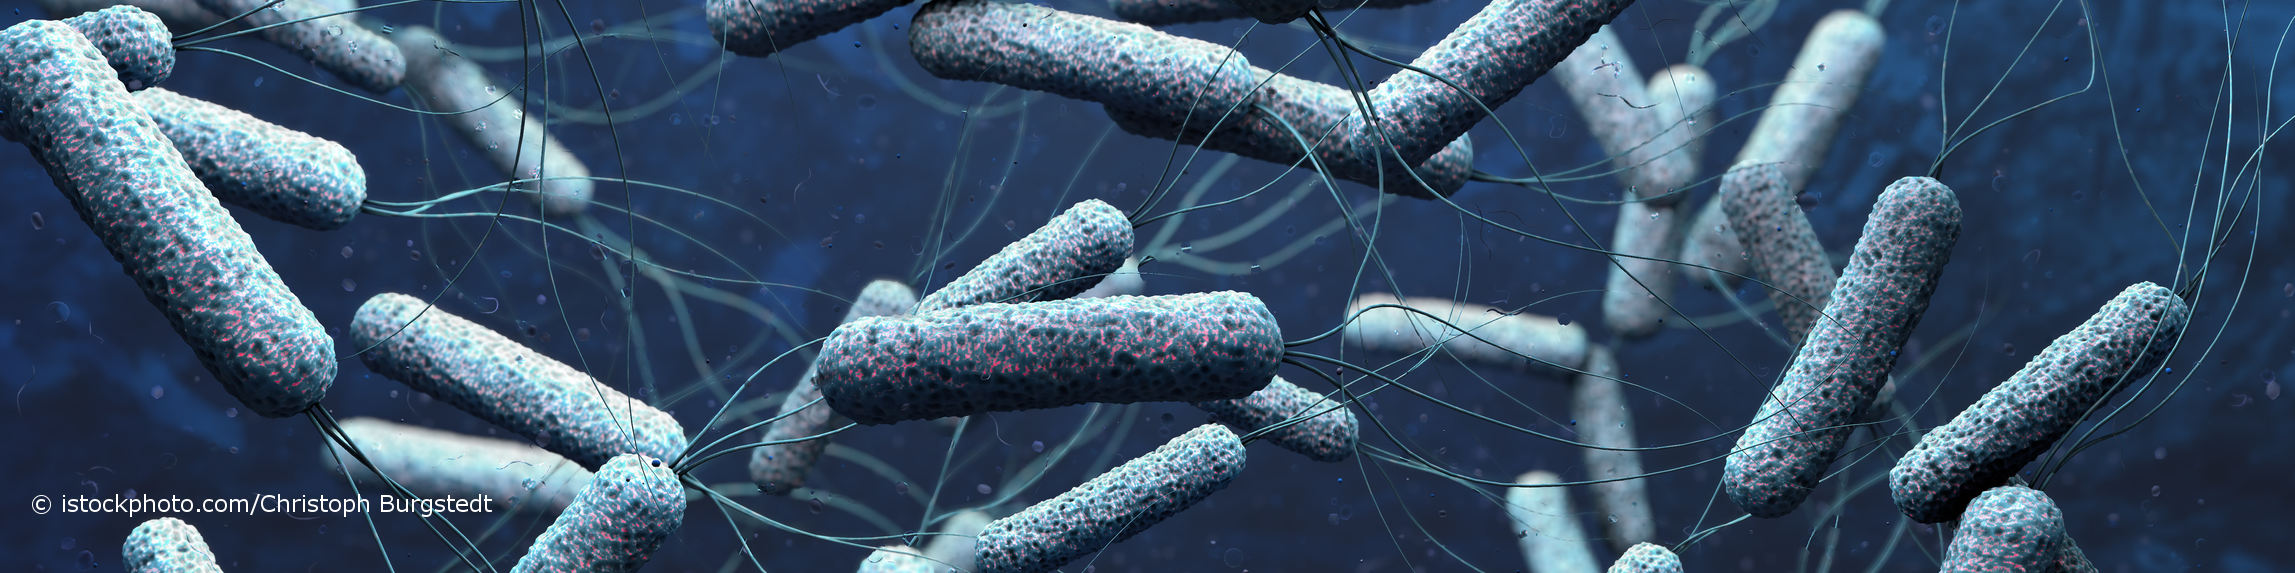 Bestimmte Stämme des Bakteriums Vibrio cholerae können Cholera hervorrufen.